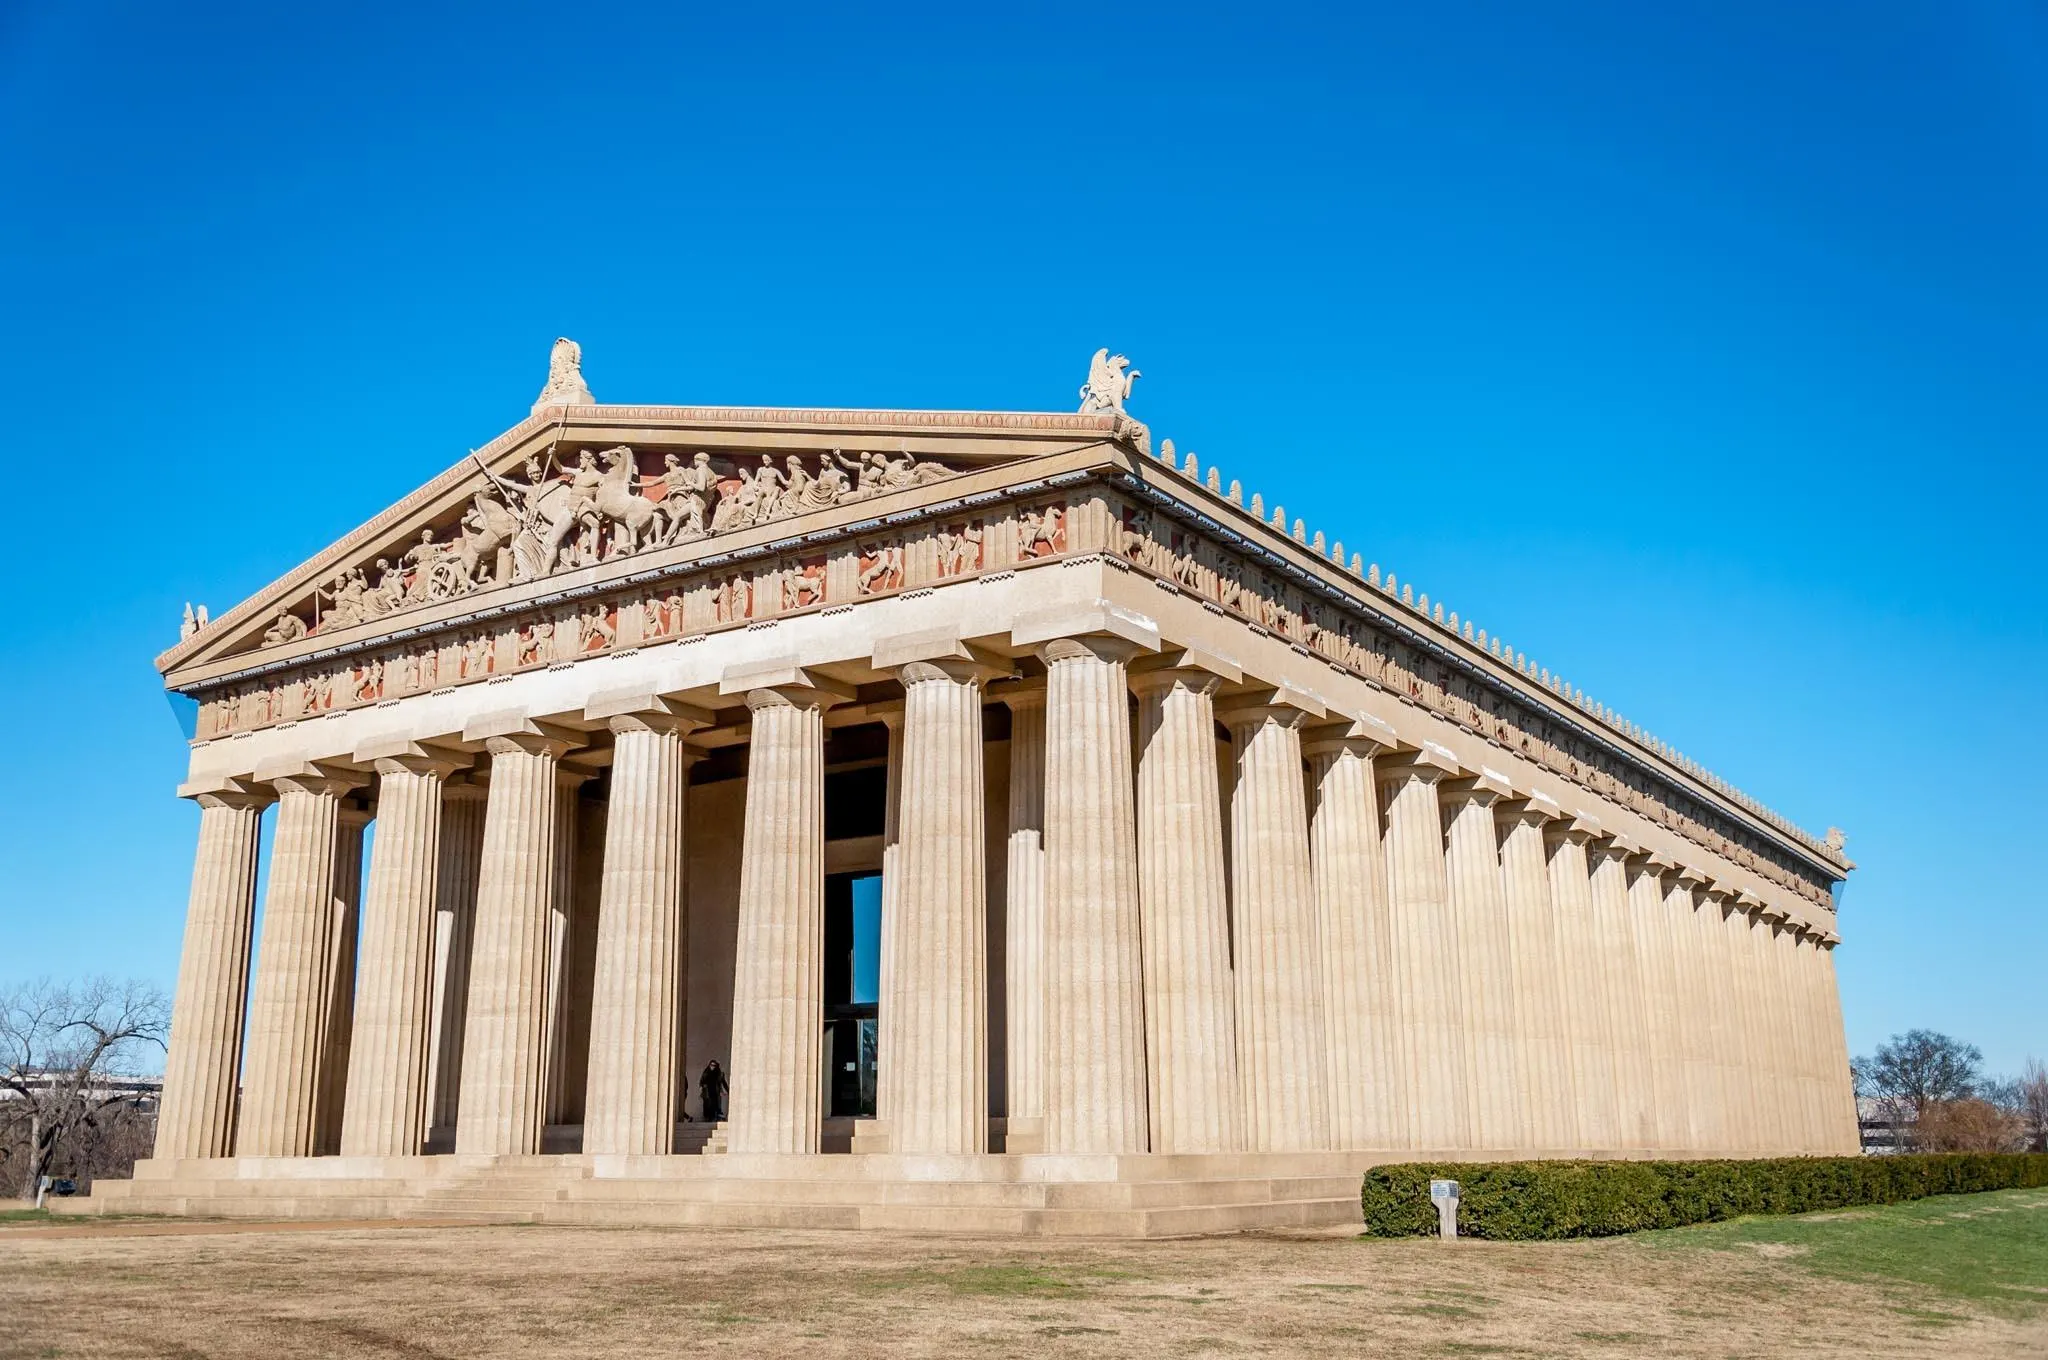 Full-scale replica of the Parthenon in Nashville TN